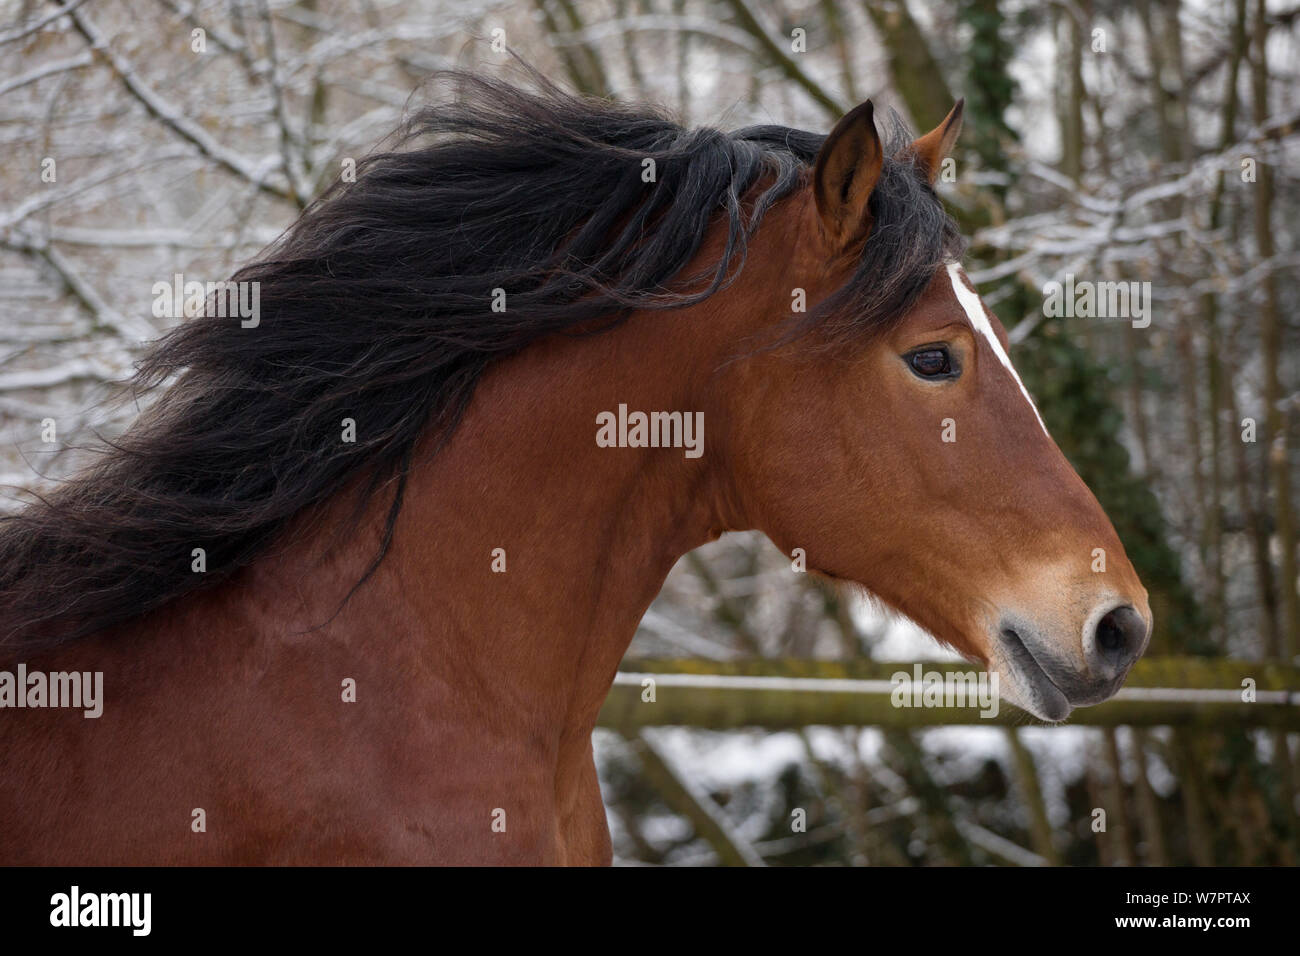 Headshot de ejecutar Franches Montagnes (Freiberger) caballo semental 'hombre', en el National Stud de Avenches, en el cantón de Vaud, Suiza. Foto de stock